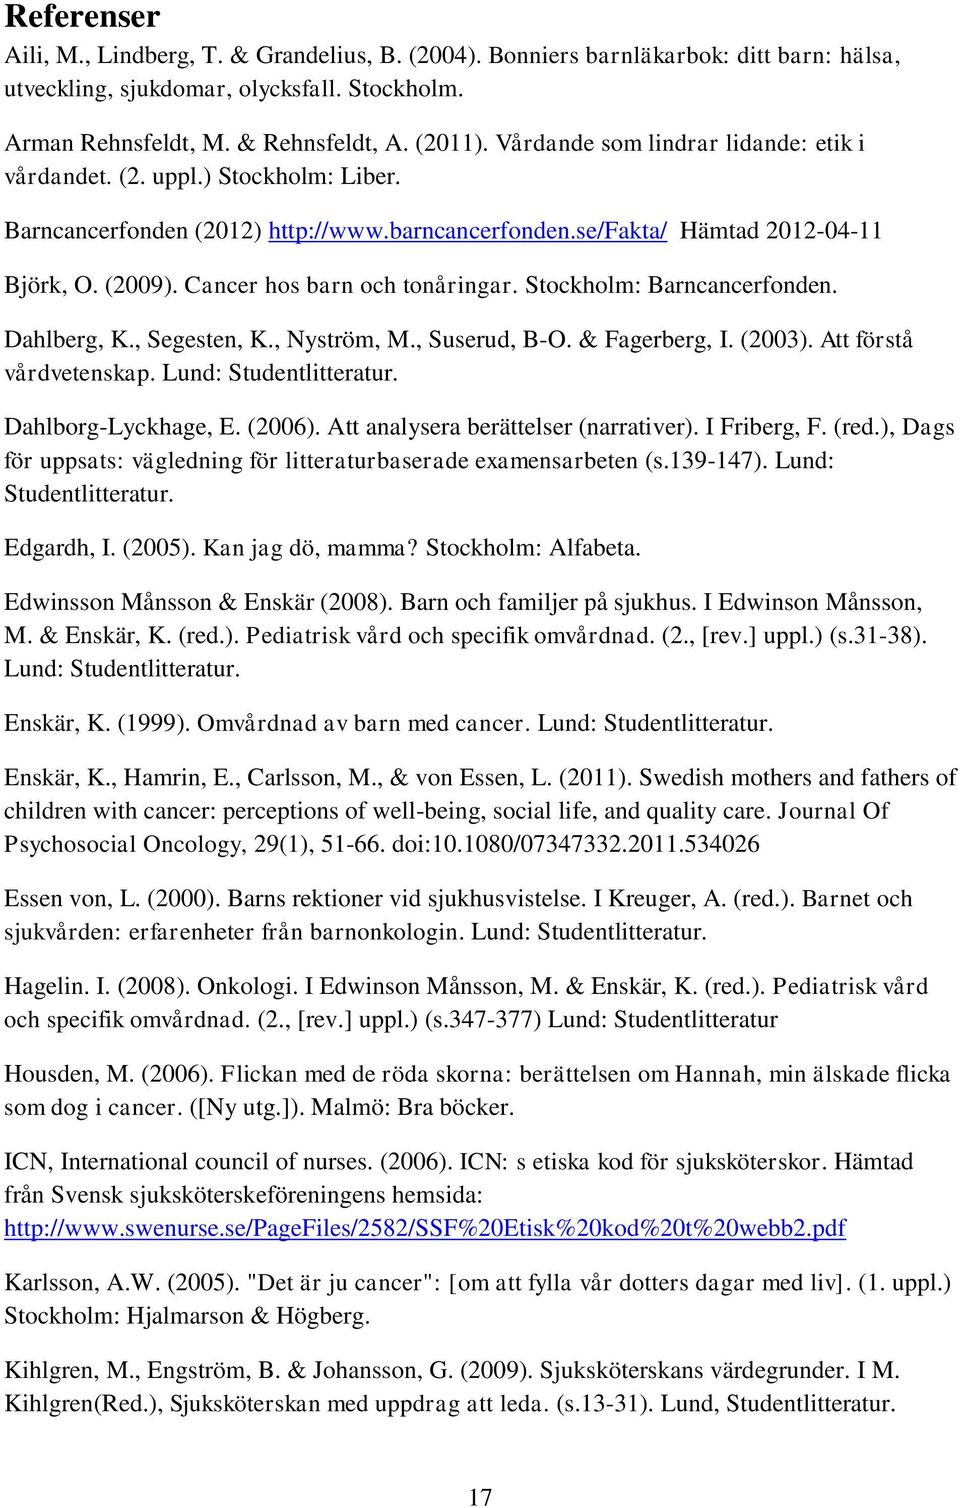 Cancer hos barn och tonåringar. Stockholm: Barncancerfonden. Dahlberg, K., Segesten, K., Nyström, M., Suserud, B-O. & Fagerberg, I. (2003). Att förstå vårdvetenskap. Lund: Studentlitteratur.